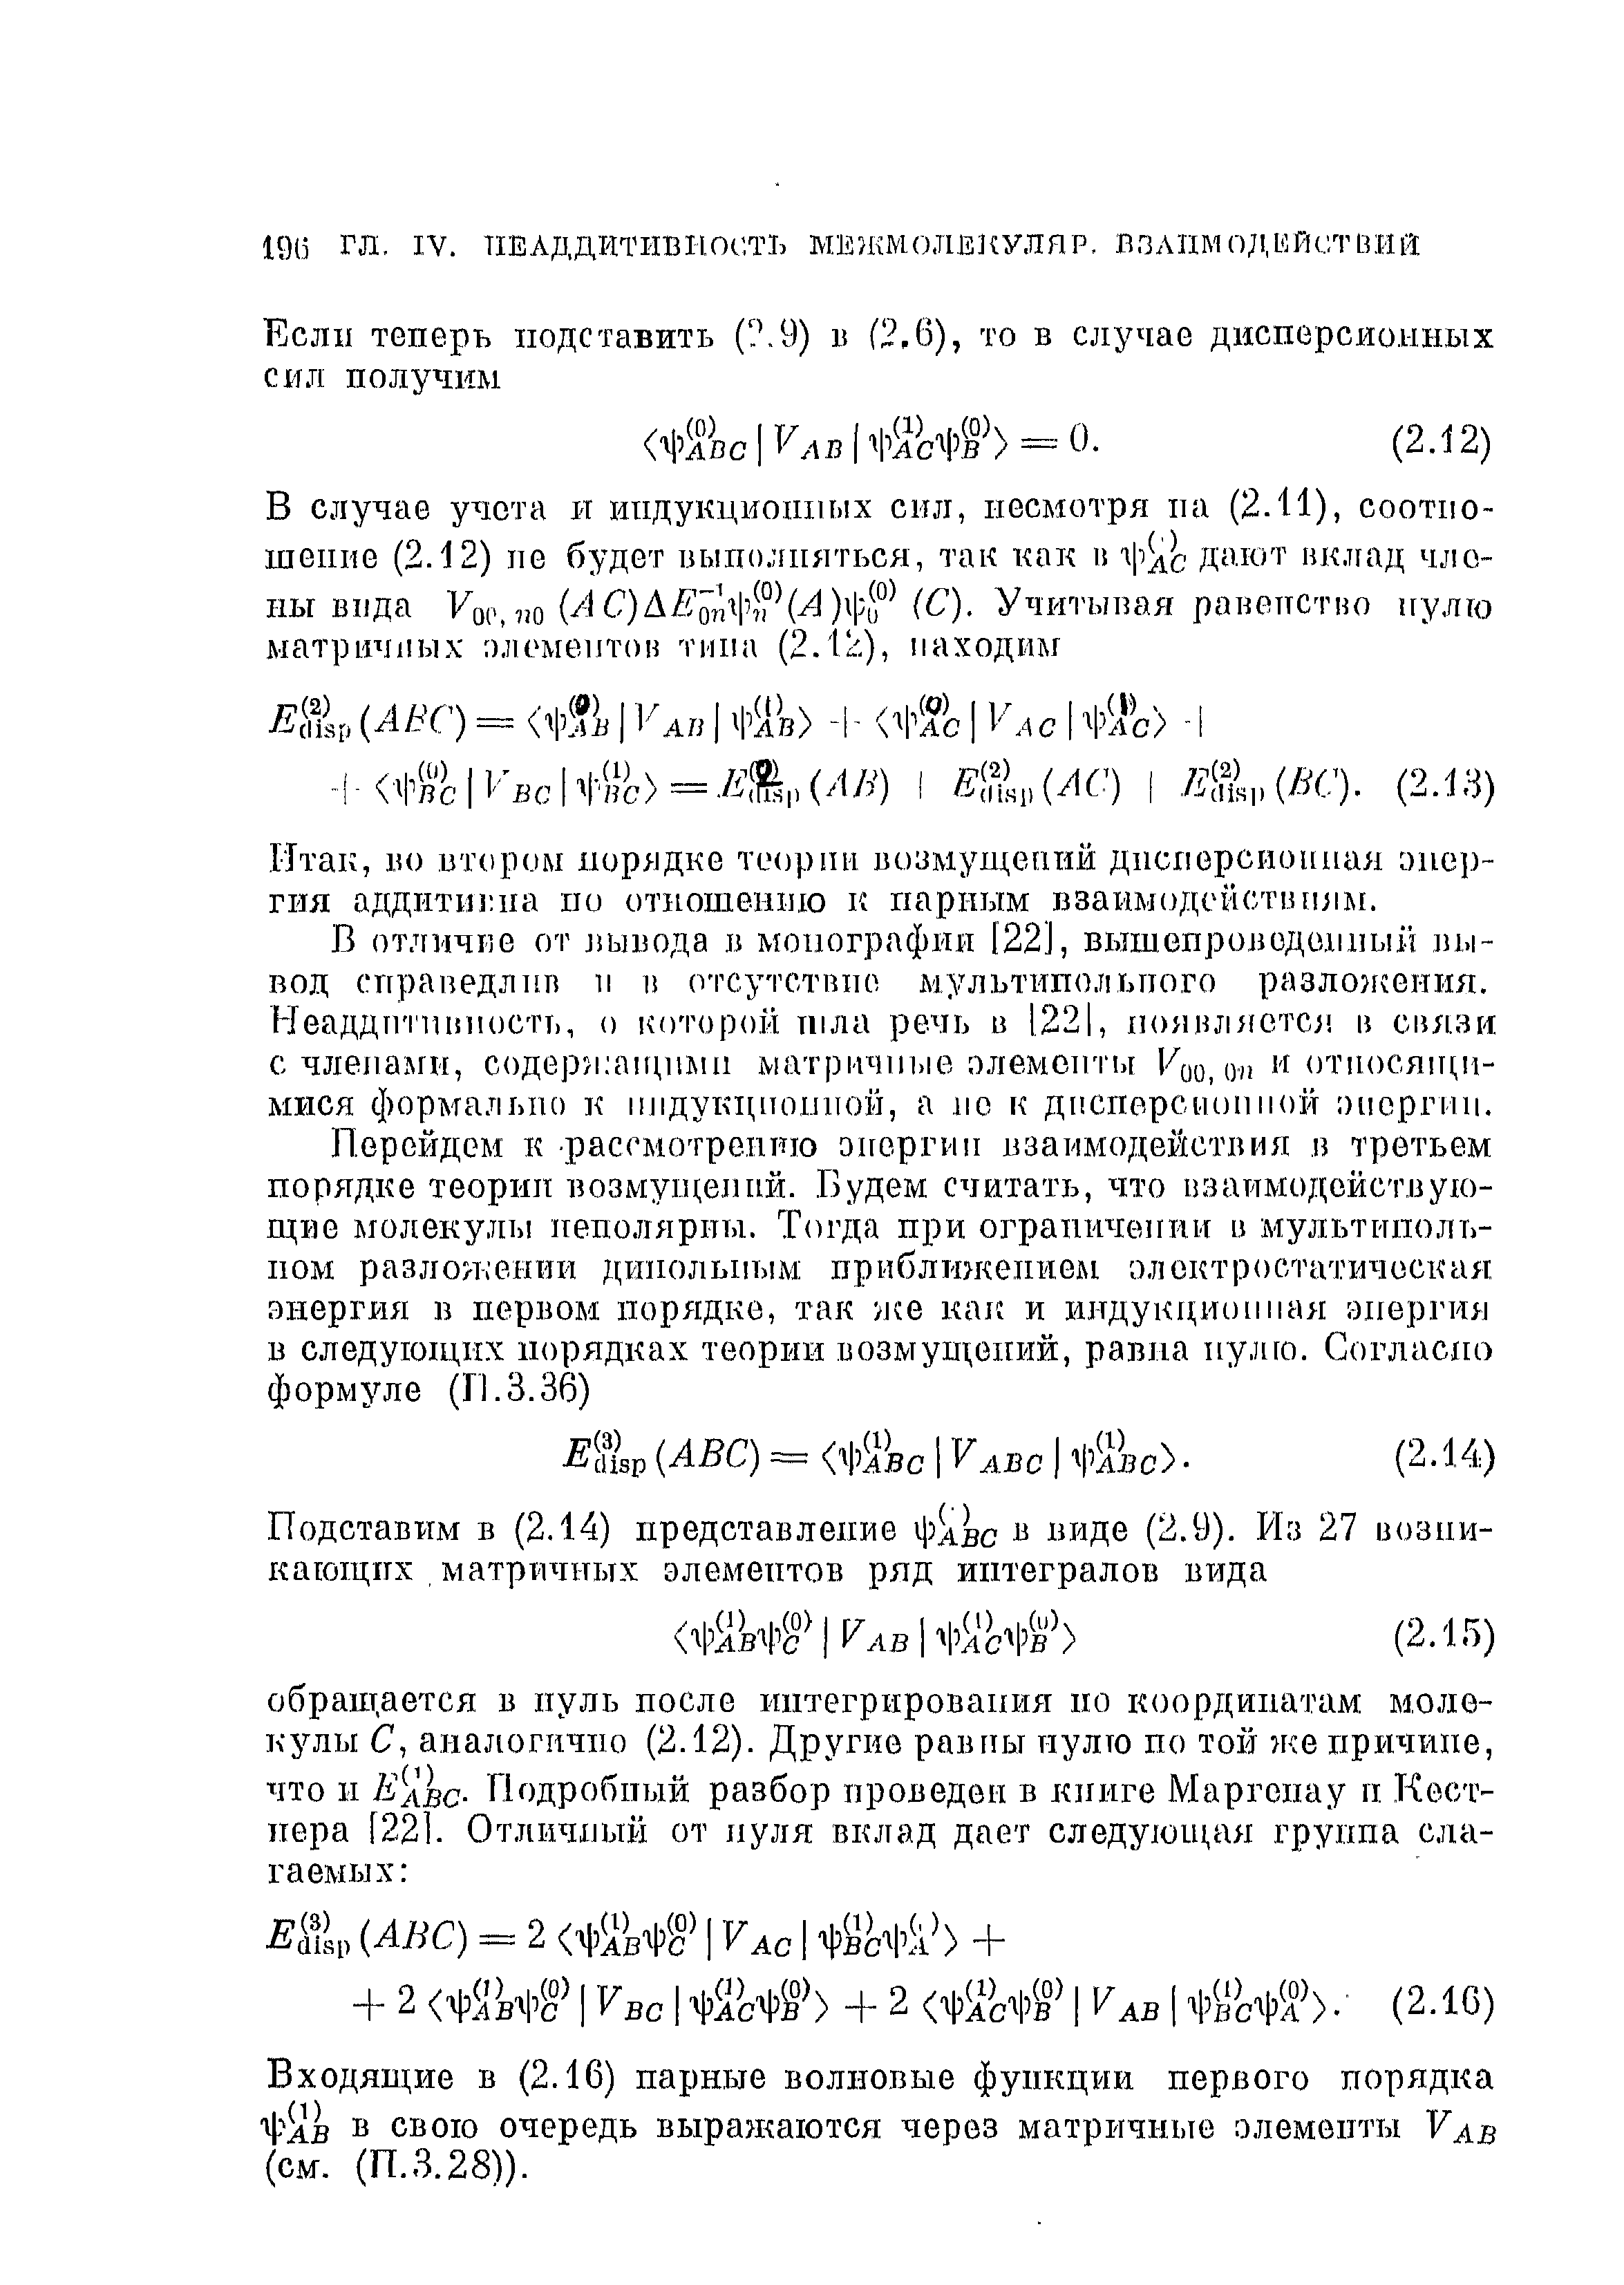 Входящие в (2.16) парные волновые функции первого порядка Ч ав в свою очередь выражаются через матричные элементы Уав (см. (П.3.28)).